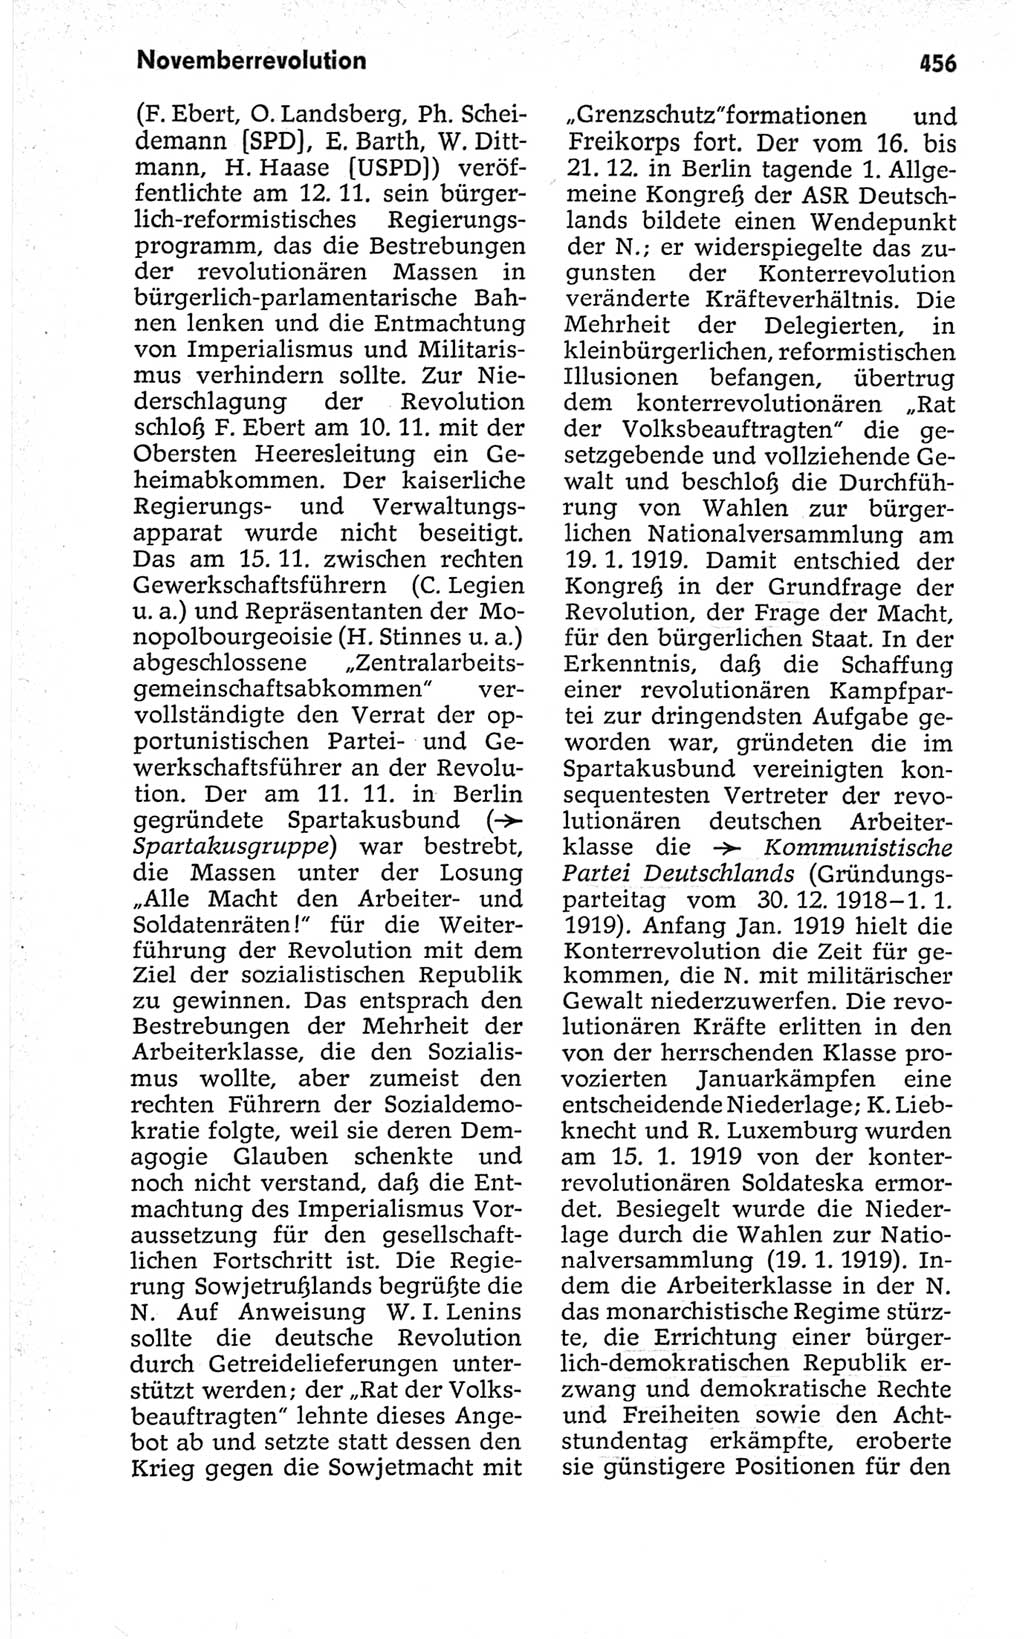 Kleines politisches Wörterbuch [Deutsche Demokratische Republik (DDR)] 1967, Seite 456 (Kl. pol. Wb. DDR 1967, S. 456)